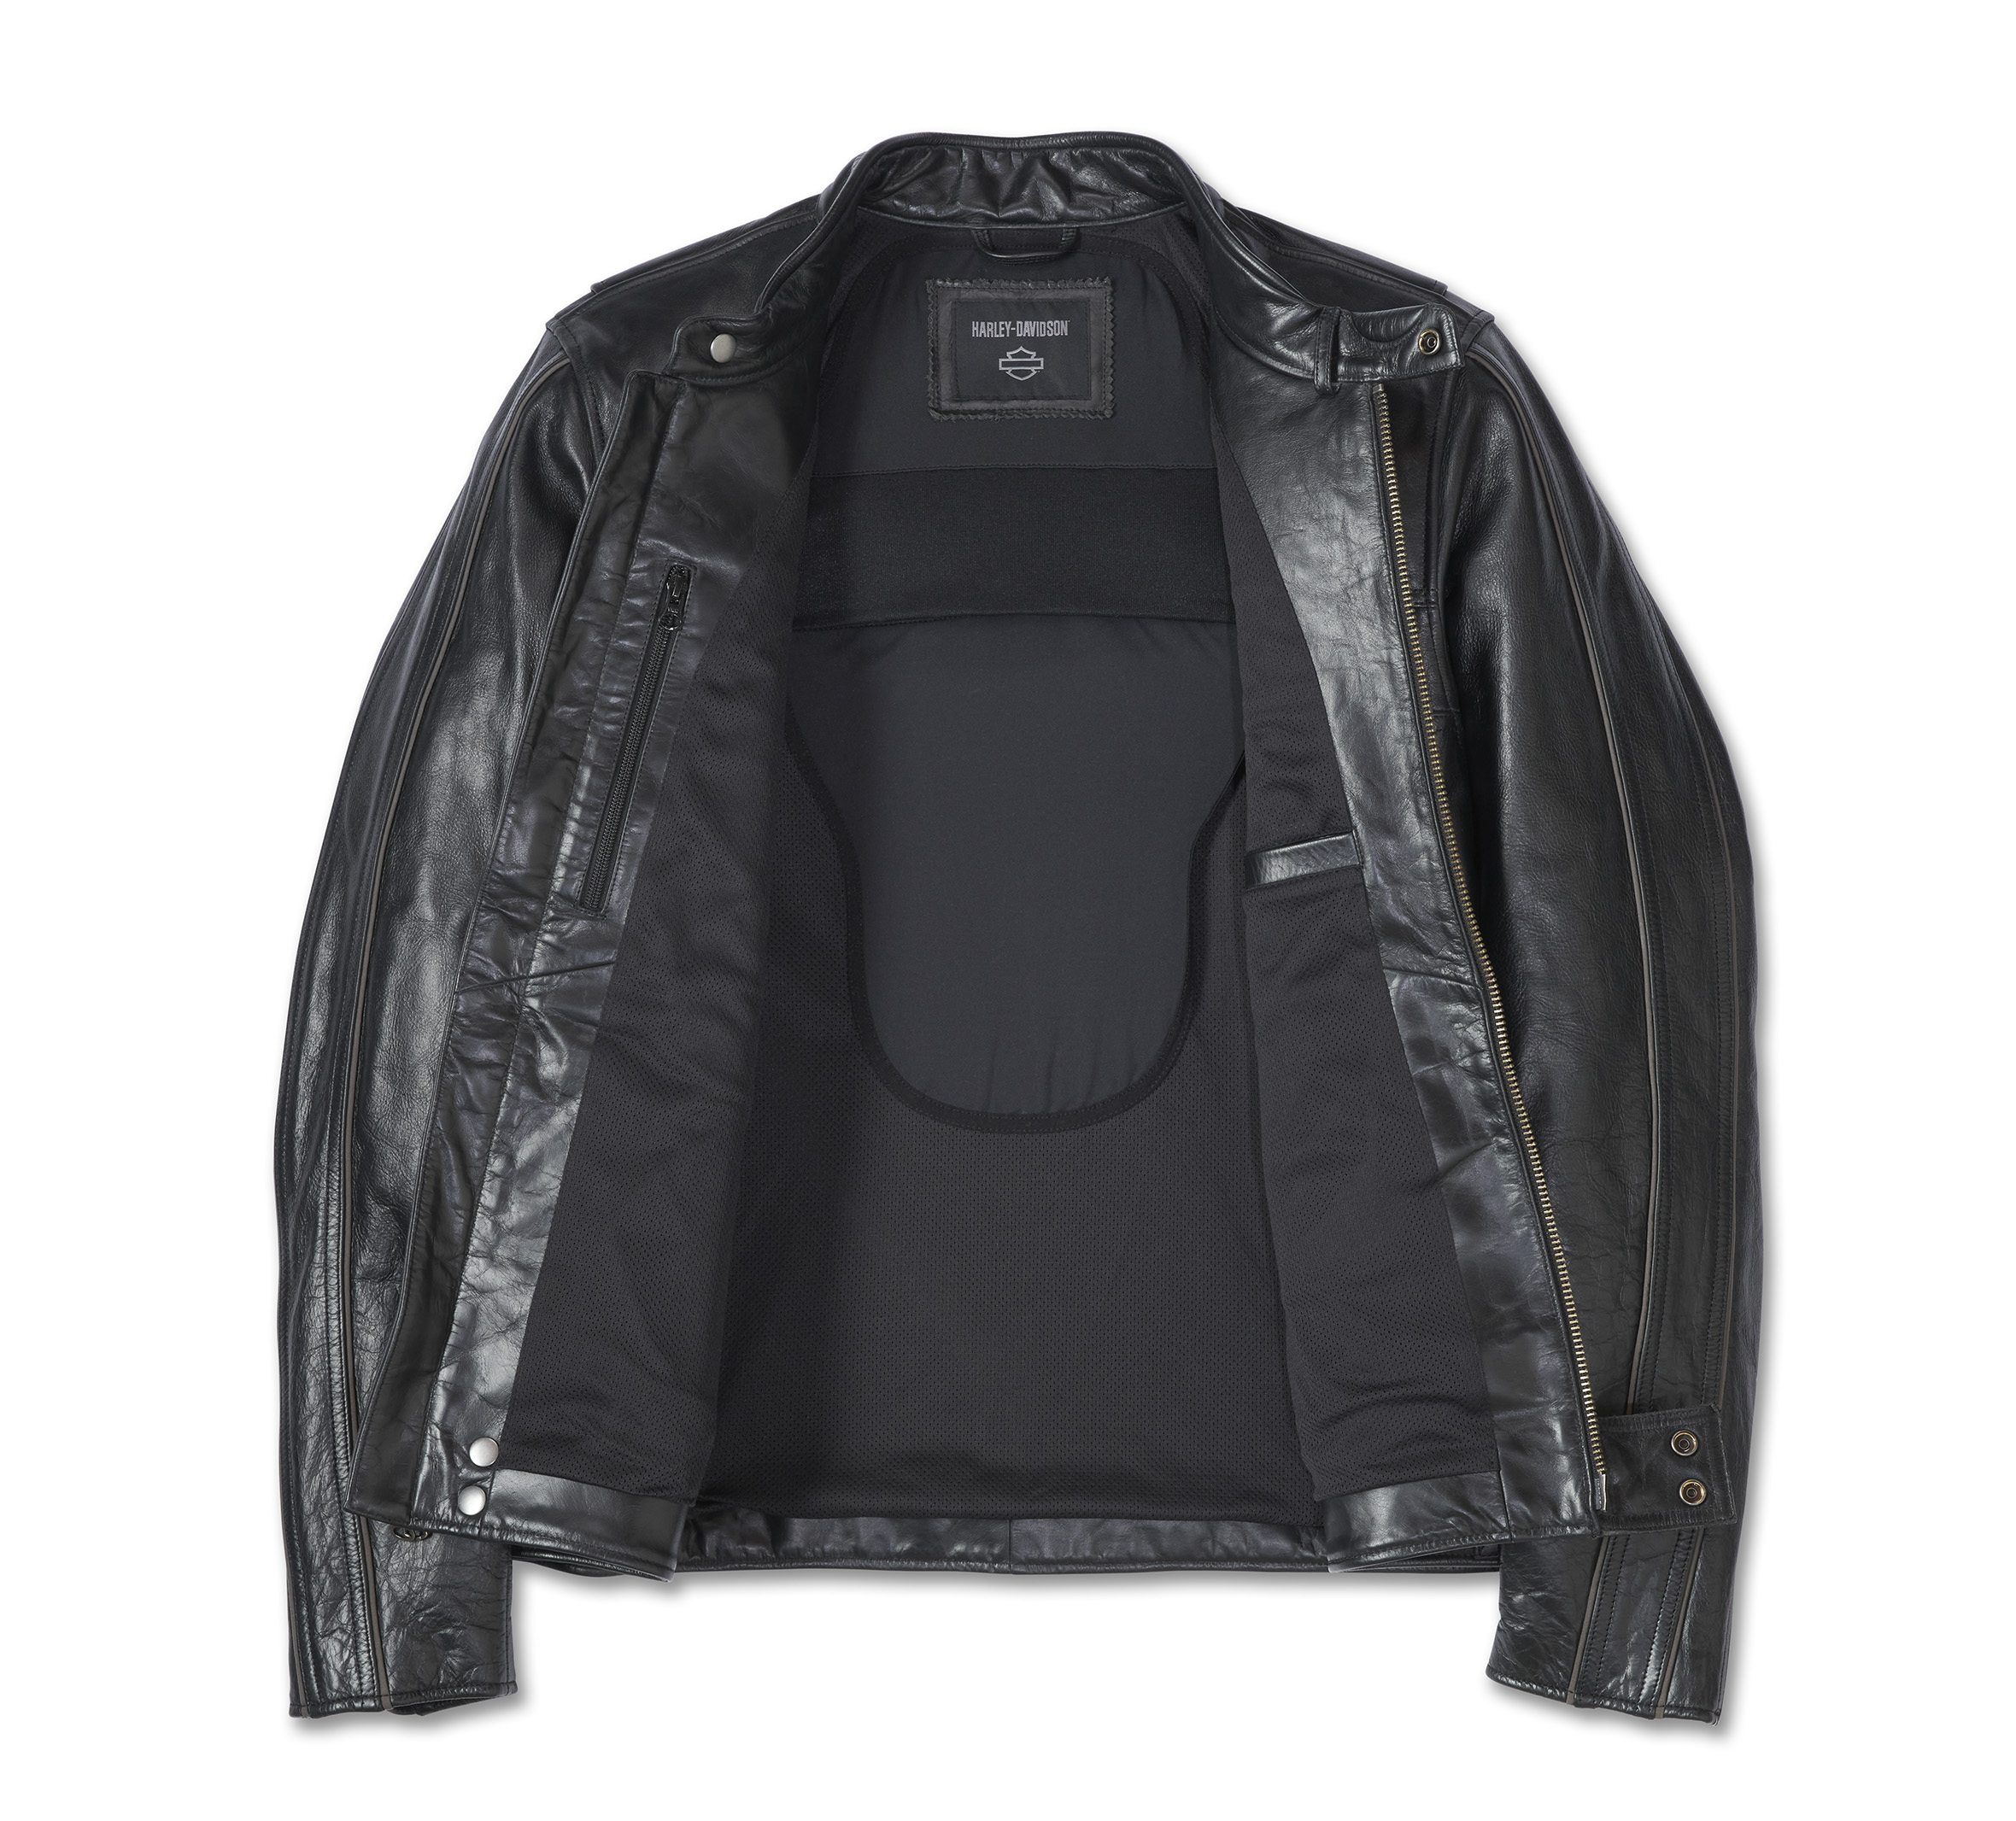 Men's H-D Flex Layering System Café Racer Leather Jacket Outer